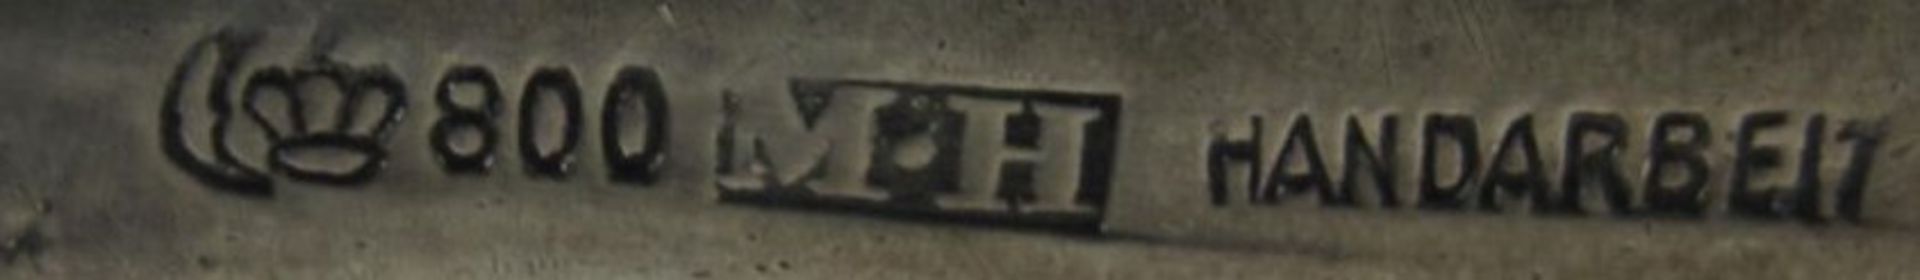 Zuckerschaufel, 800er Silber "M H", 28,6g, Gravur "Tom Kyle", L-13,5cm. - Bild 2 aus 2